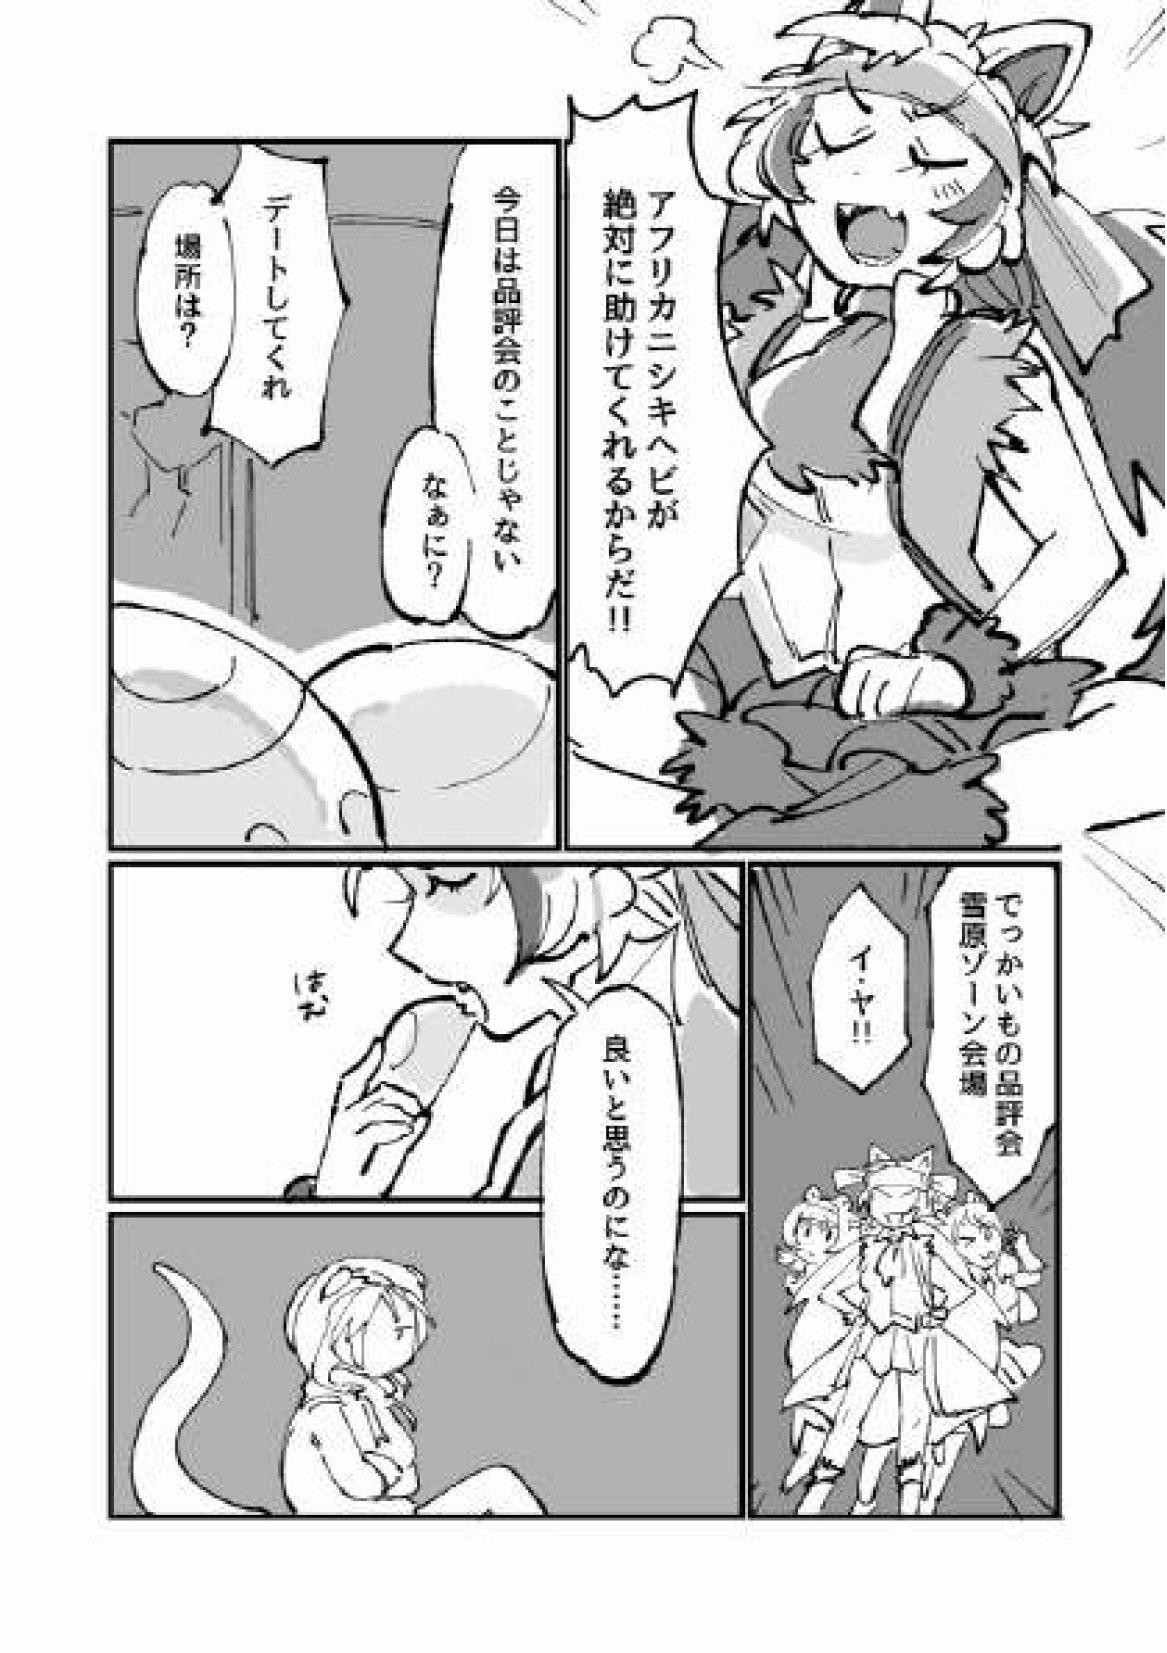 Swinger Furukizu to Inori - Kemono friends Bottom - Page 5